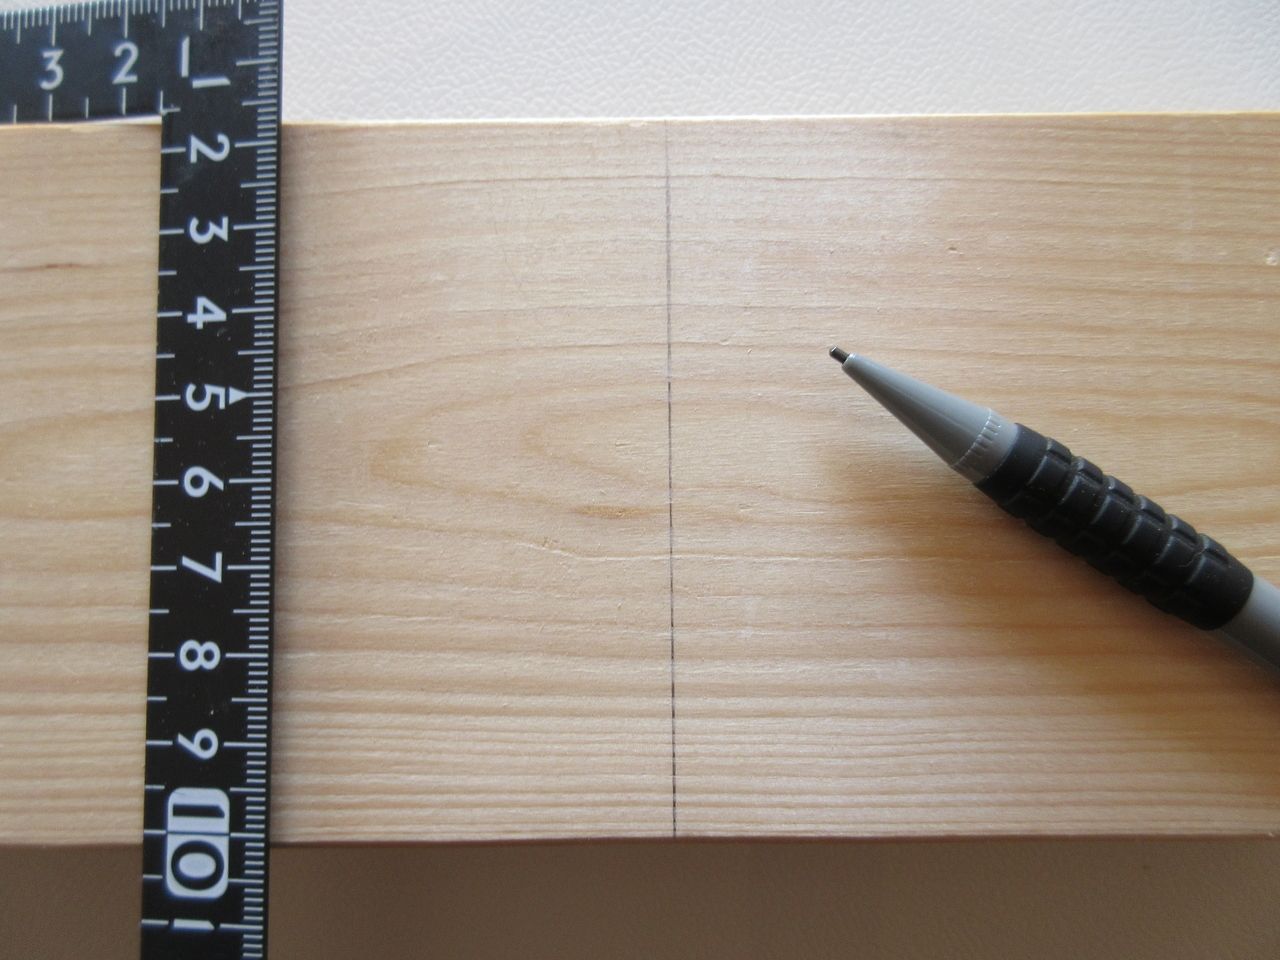 サシガネを使えば木材に対して直角な線を引きます。木材にサシガネを引っ掛けて、鉛筆などで線を引けば完了です。状況にもよりますが、サシガネの長手（長い方）側を木材に当てて、妻手（短い方）側で線を引いた方がより正確な直角の線が引けます。